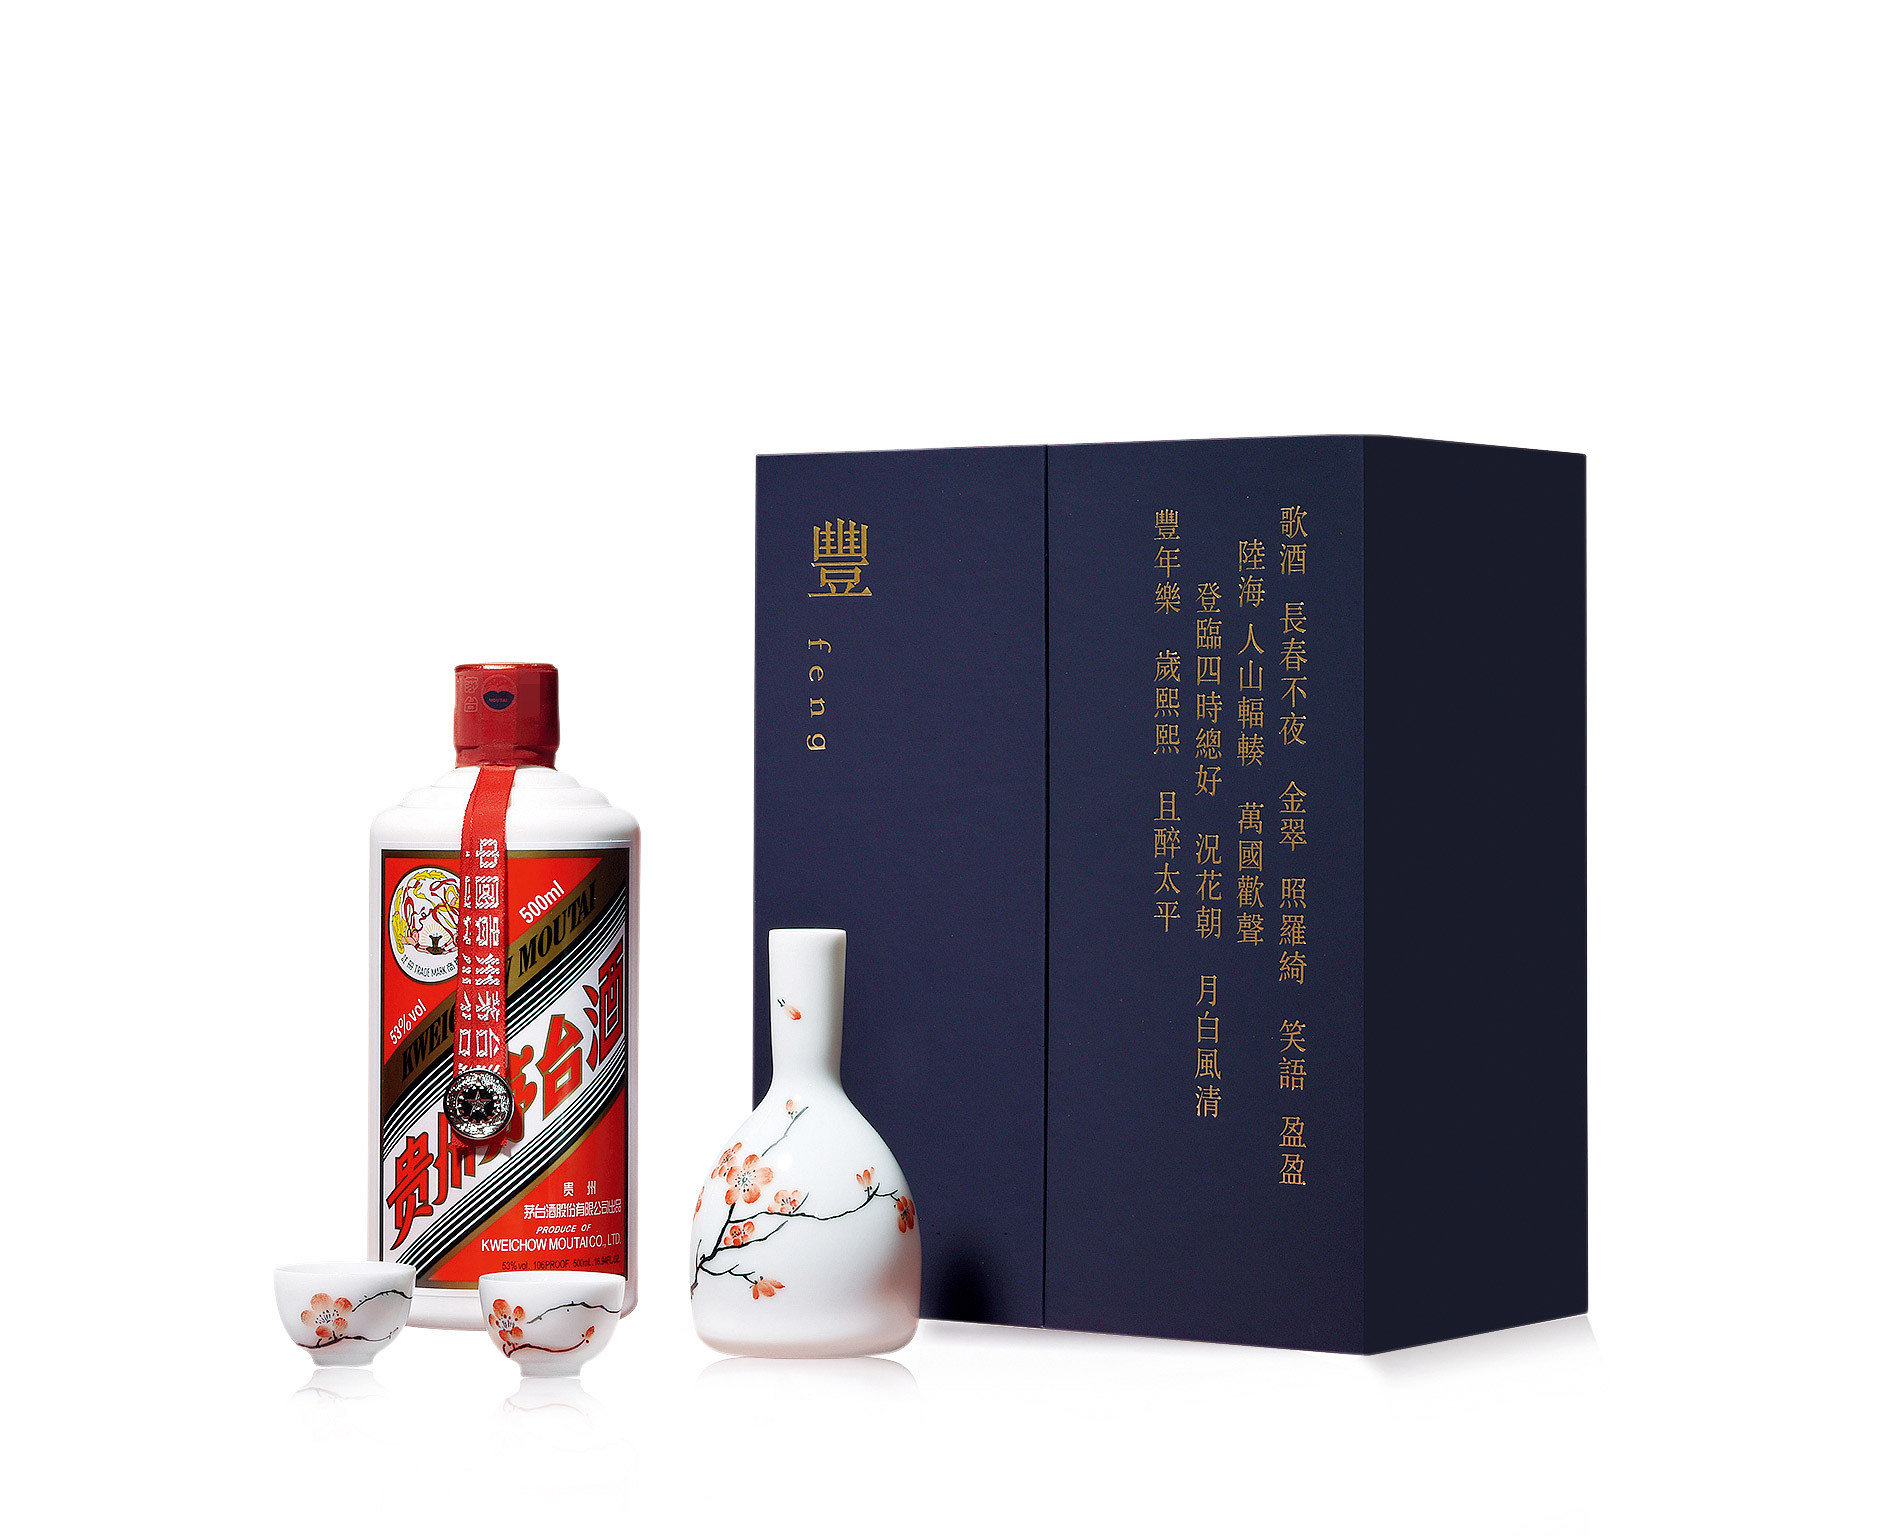 2021年贵州茅台酒丰礼盒